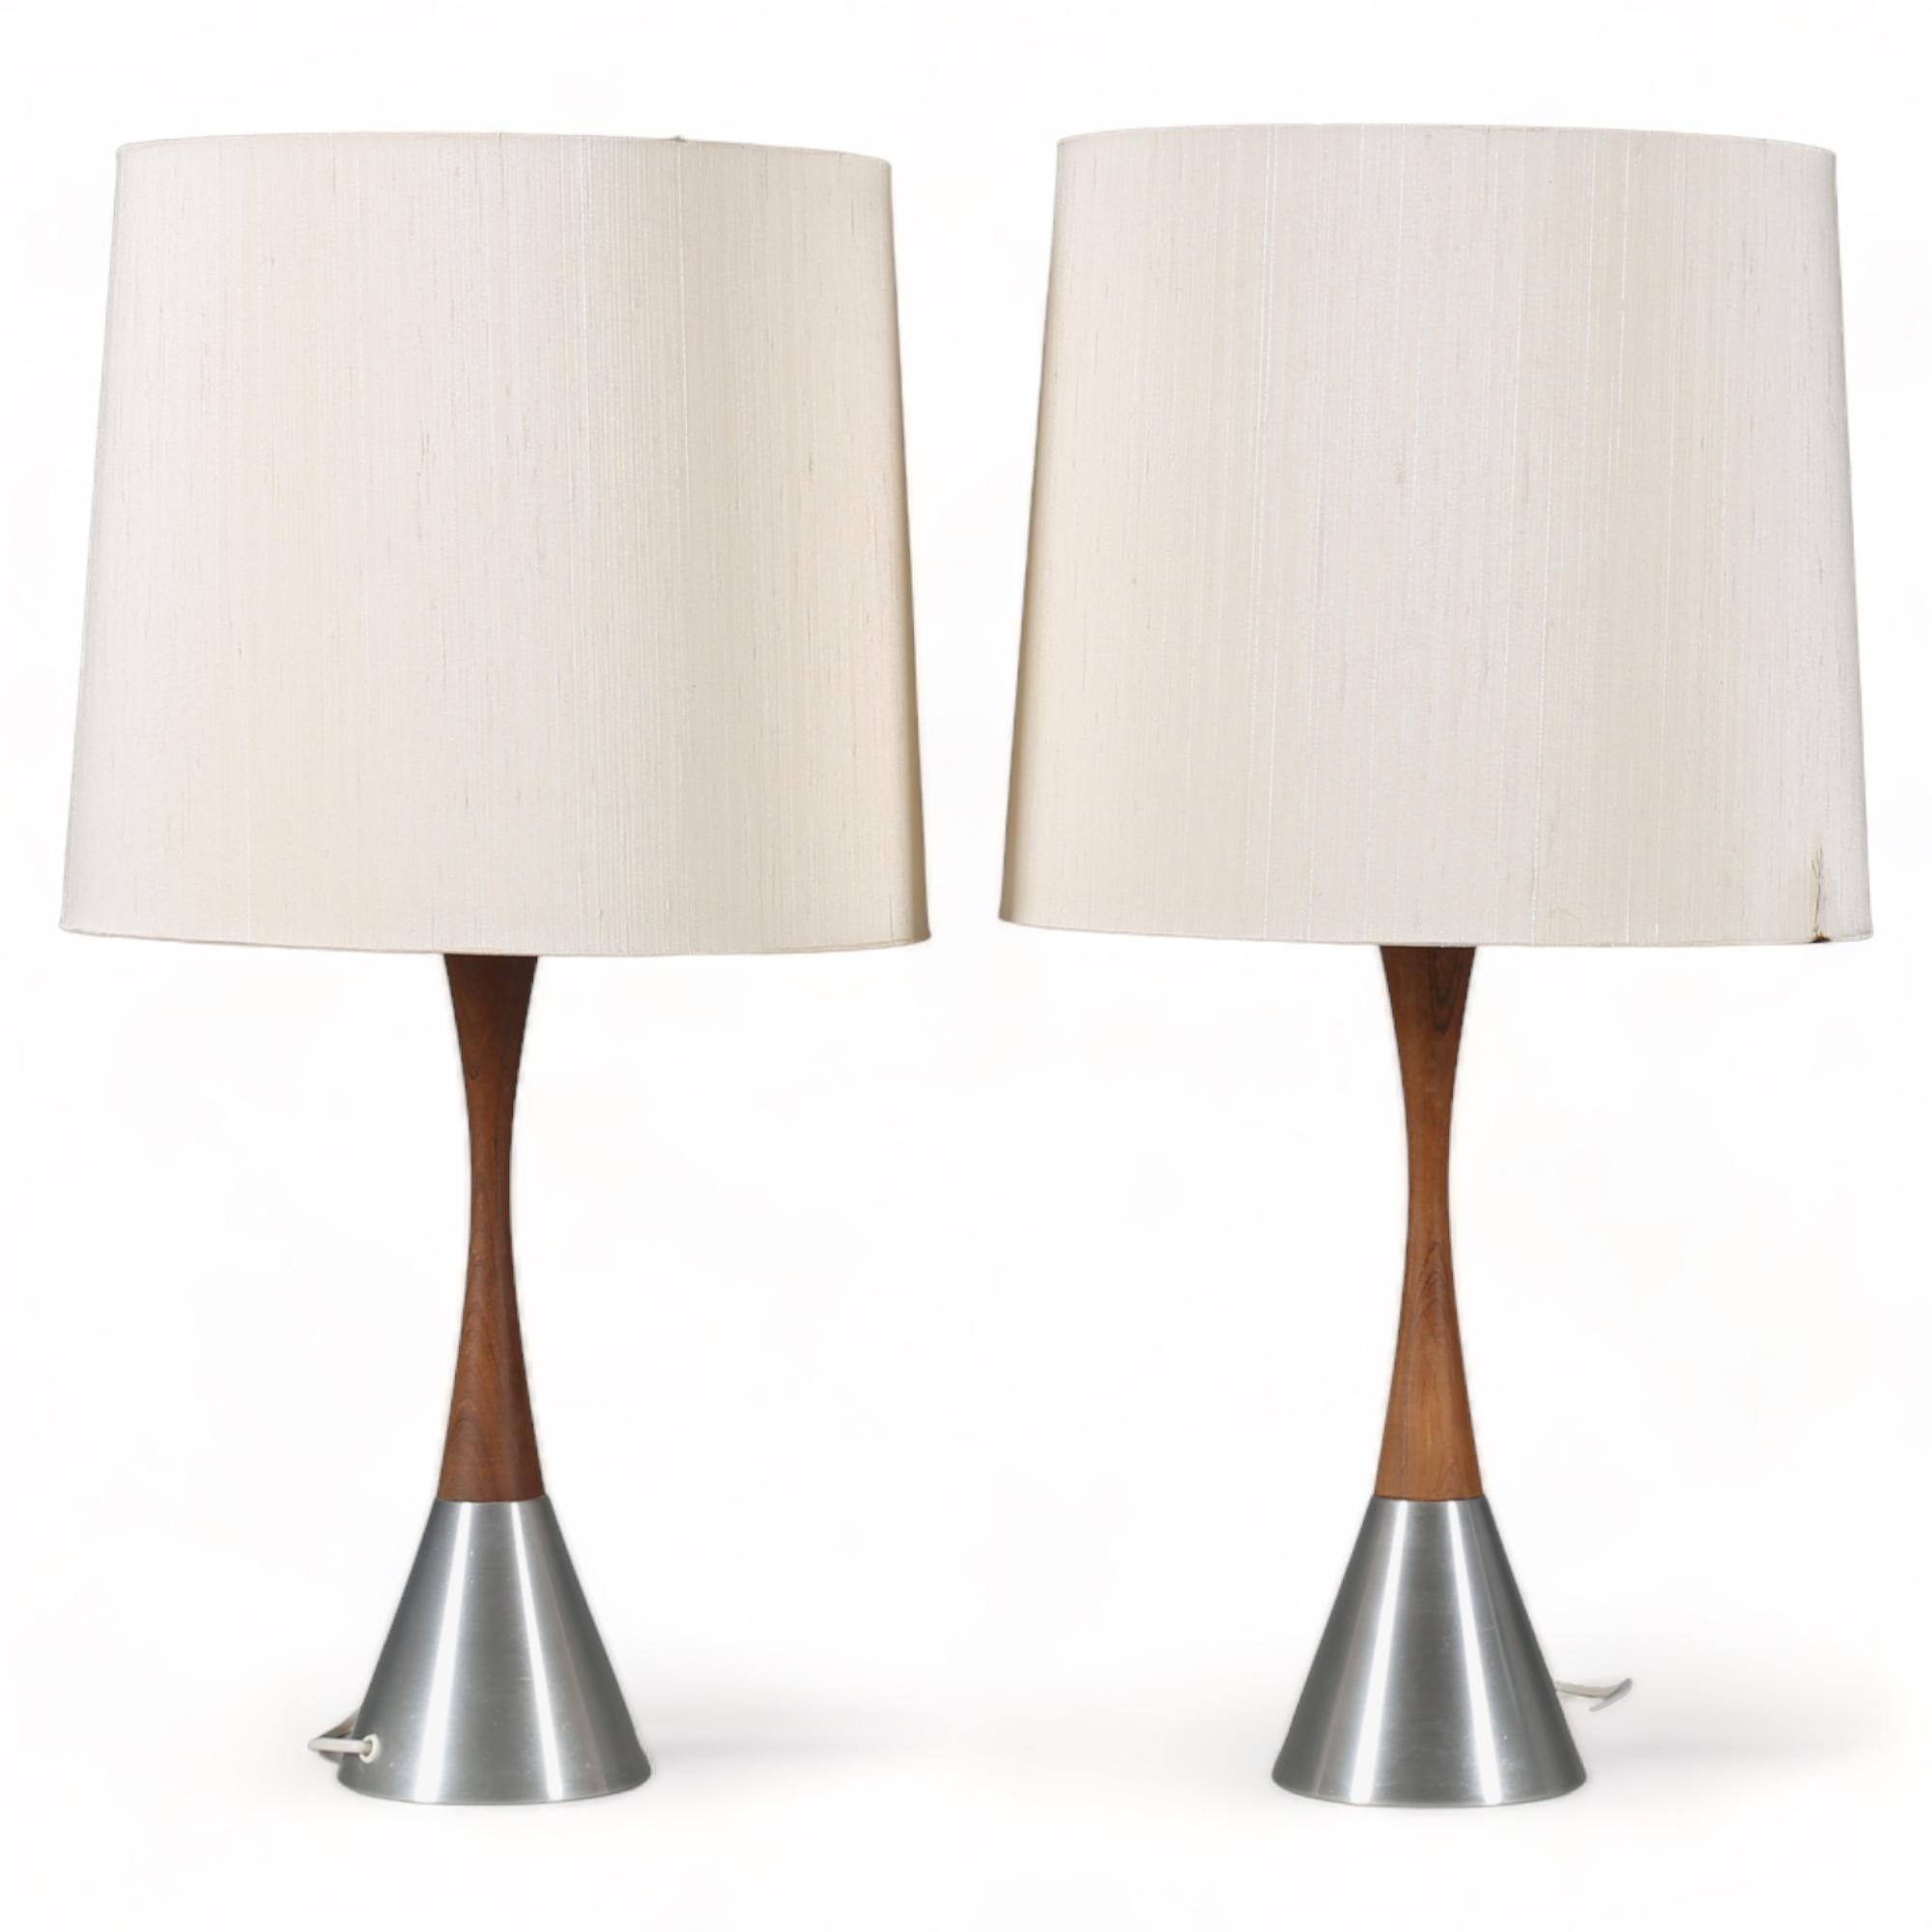 TABLE LAMPS, a pair, made of  teak/metal, model 